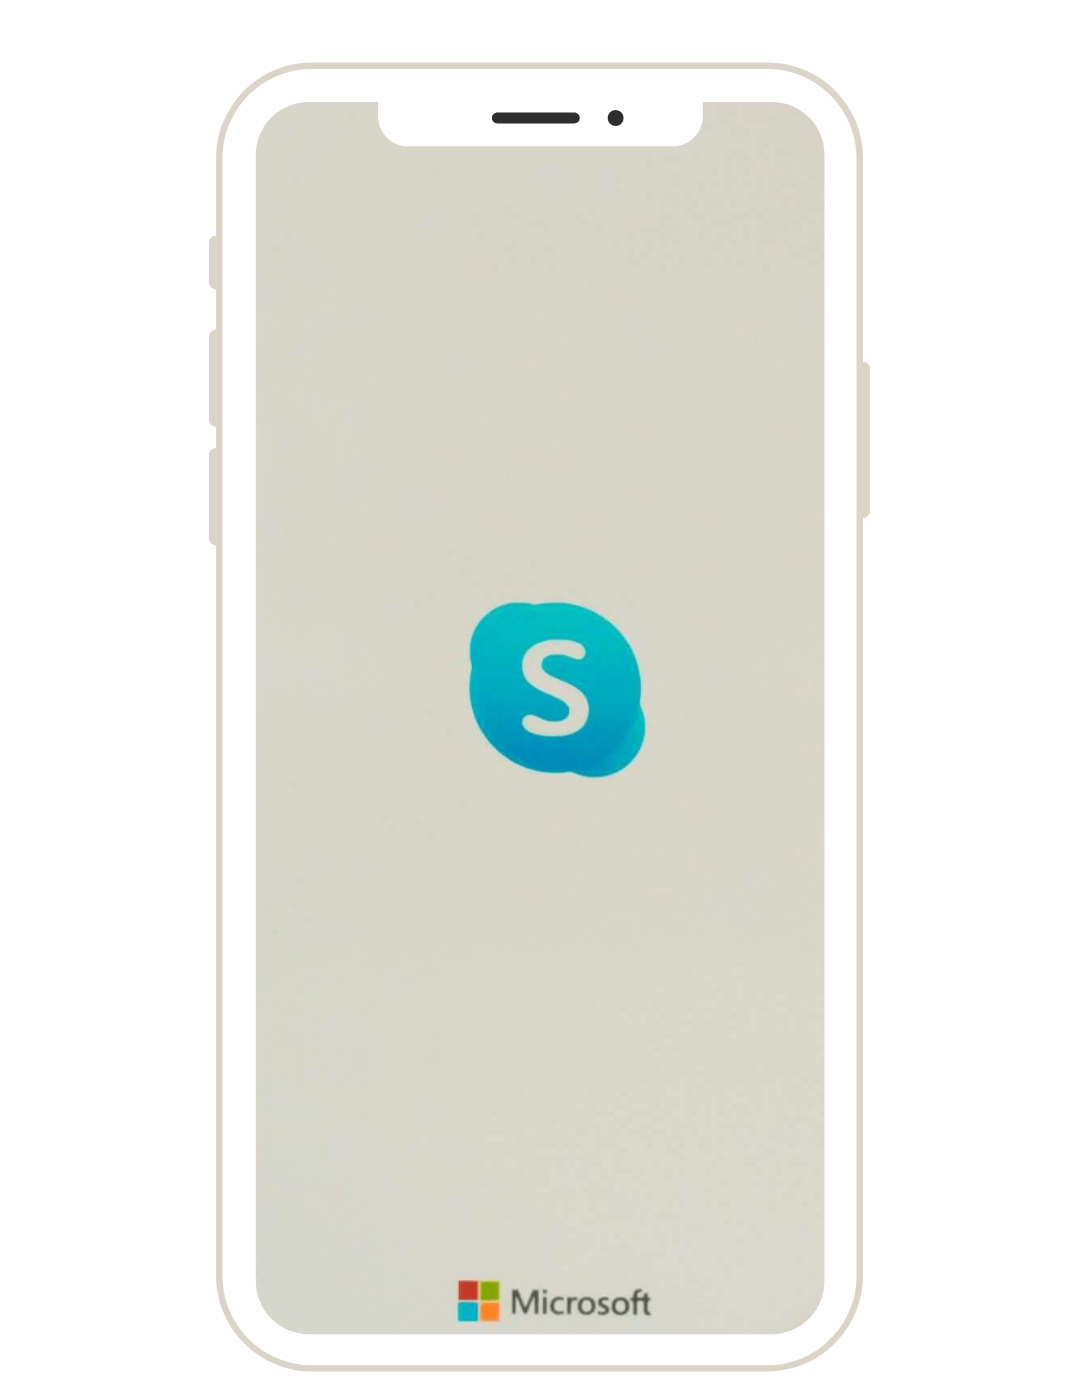 Screenshot of Skype mobile app